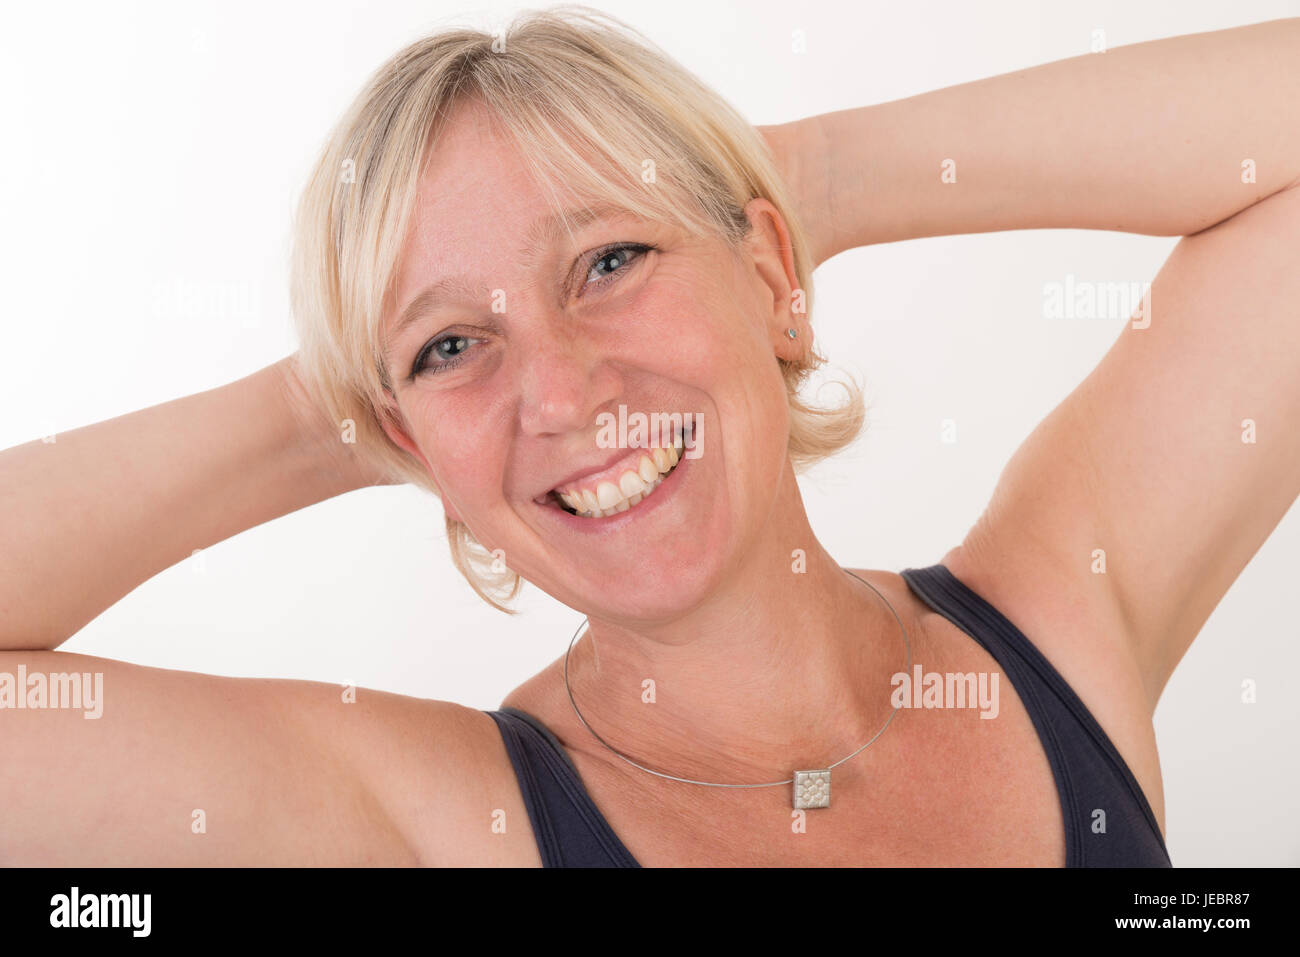 Portrait d'un milieu blond attrayant de femme européenne portant haut bleu montrant heureux face - moitié du corps - studio shot on white background Banque D'Images